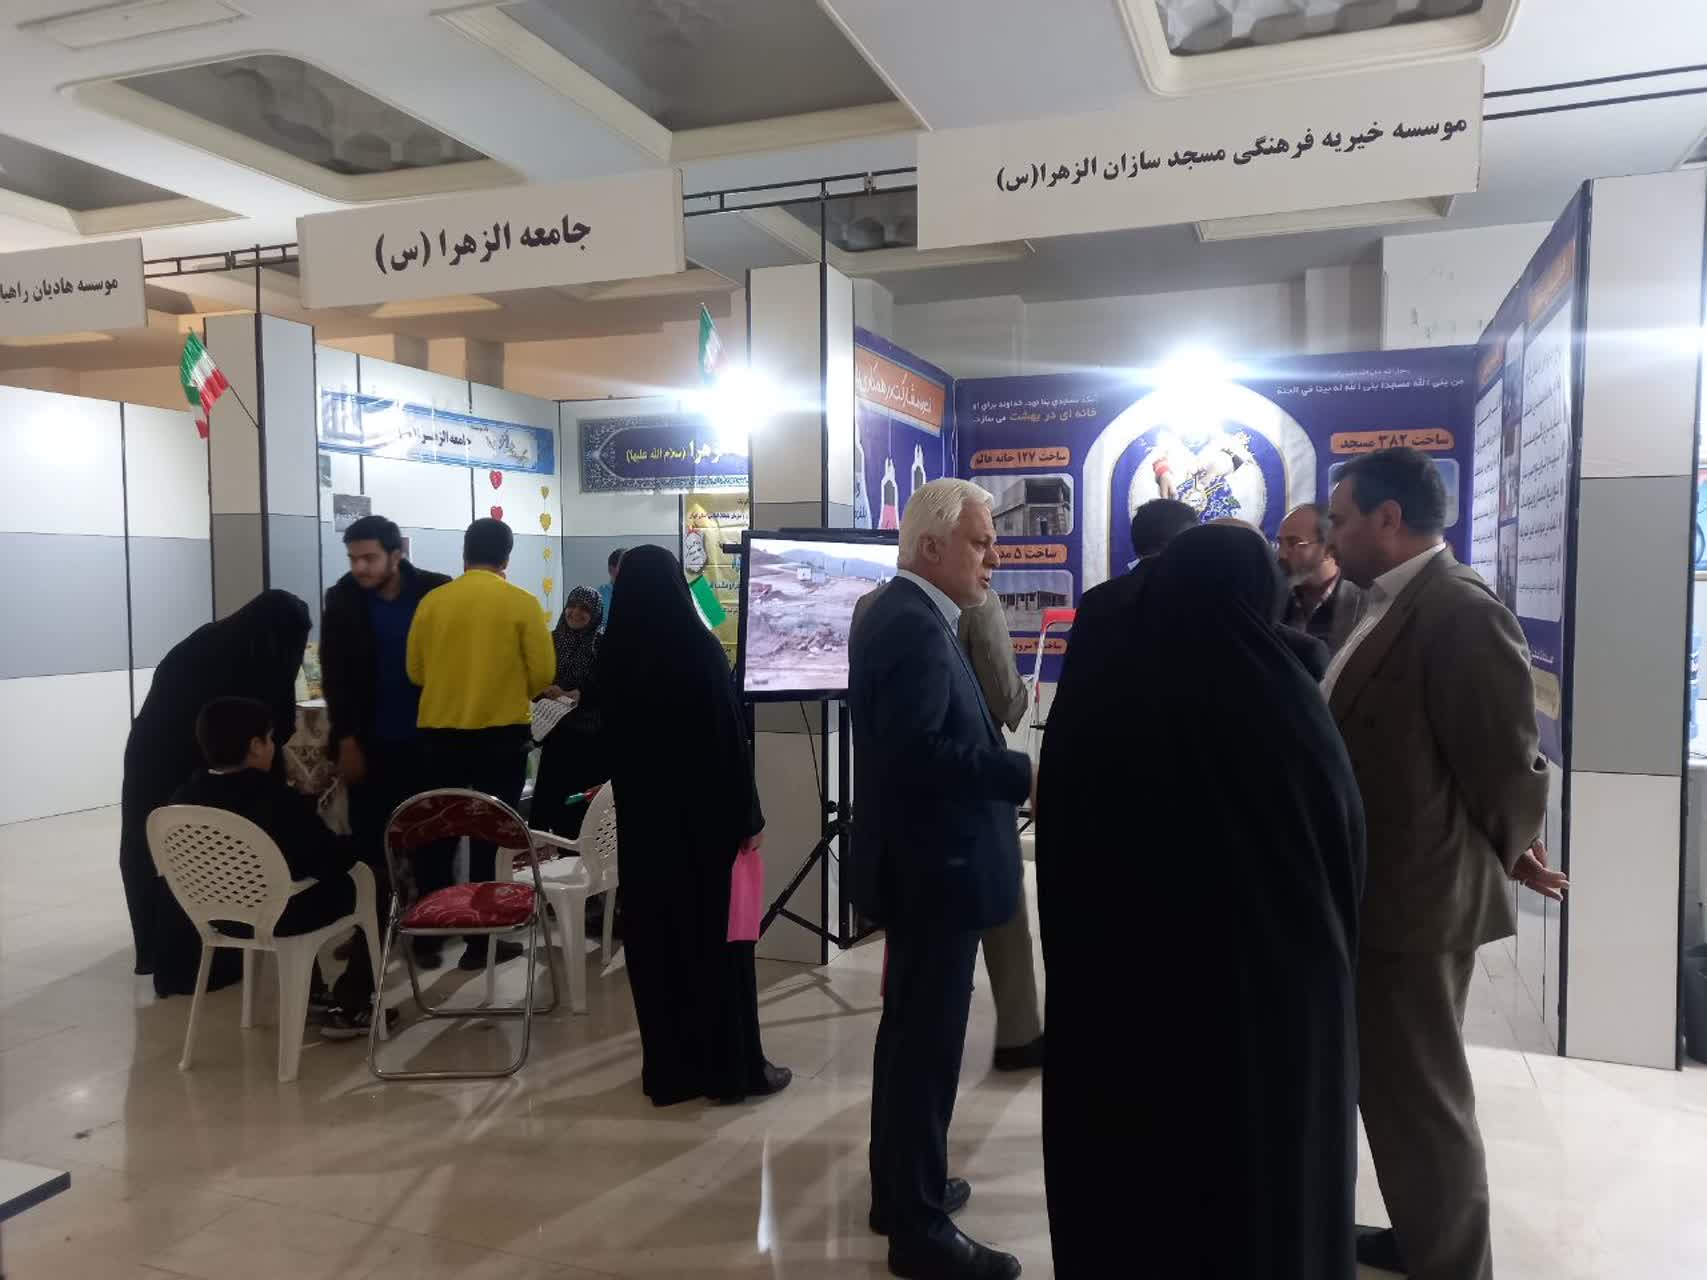 بخش موسسات مردمی نمایشگاه با 45 غرفه میزبان علاقه مندان به قرآن و عترت خواهد بود